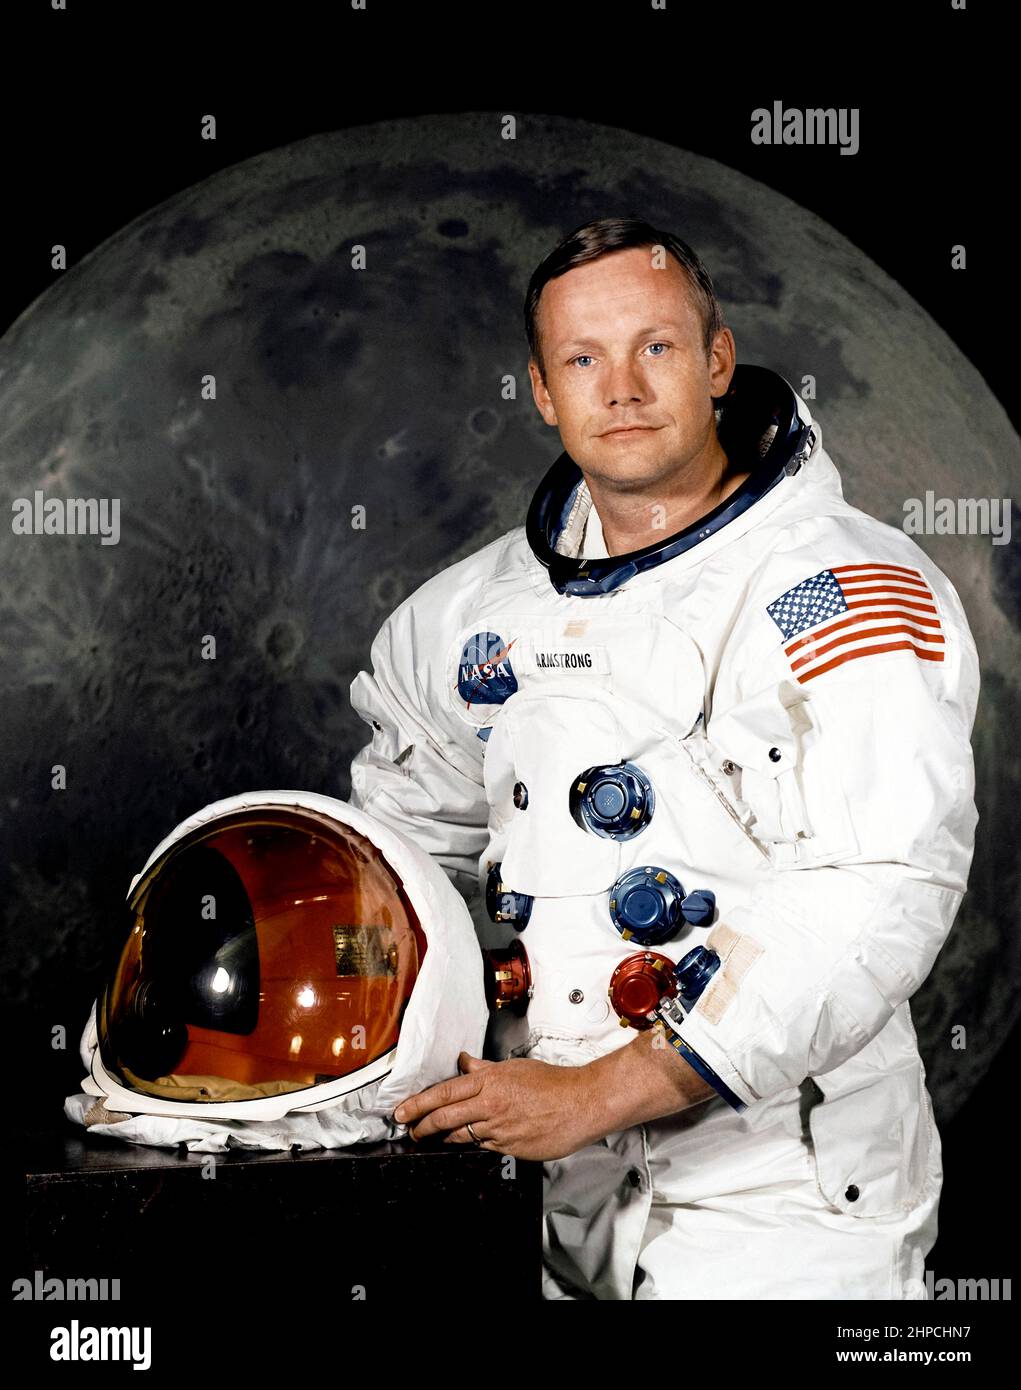 Offizielles NASA-Porträt des Astronauten Neil A. Armstrong, Kommandeur der Apollo 11 Lunar Landing-Mission in seinem Weltraumanzug, mit seinem Helm auf dem Tisch vor ihm. Hinter ihm ist ein großes Foto der Mondoberfläche. Das Foto wurde am 1. Juli 1969 aufgenommen; Apollo 11 startete am 16. Juli und war der Weltraumflug, bei dem die Menschen zum ersten Mal auf dem Mond landeten. Stockfoto